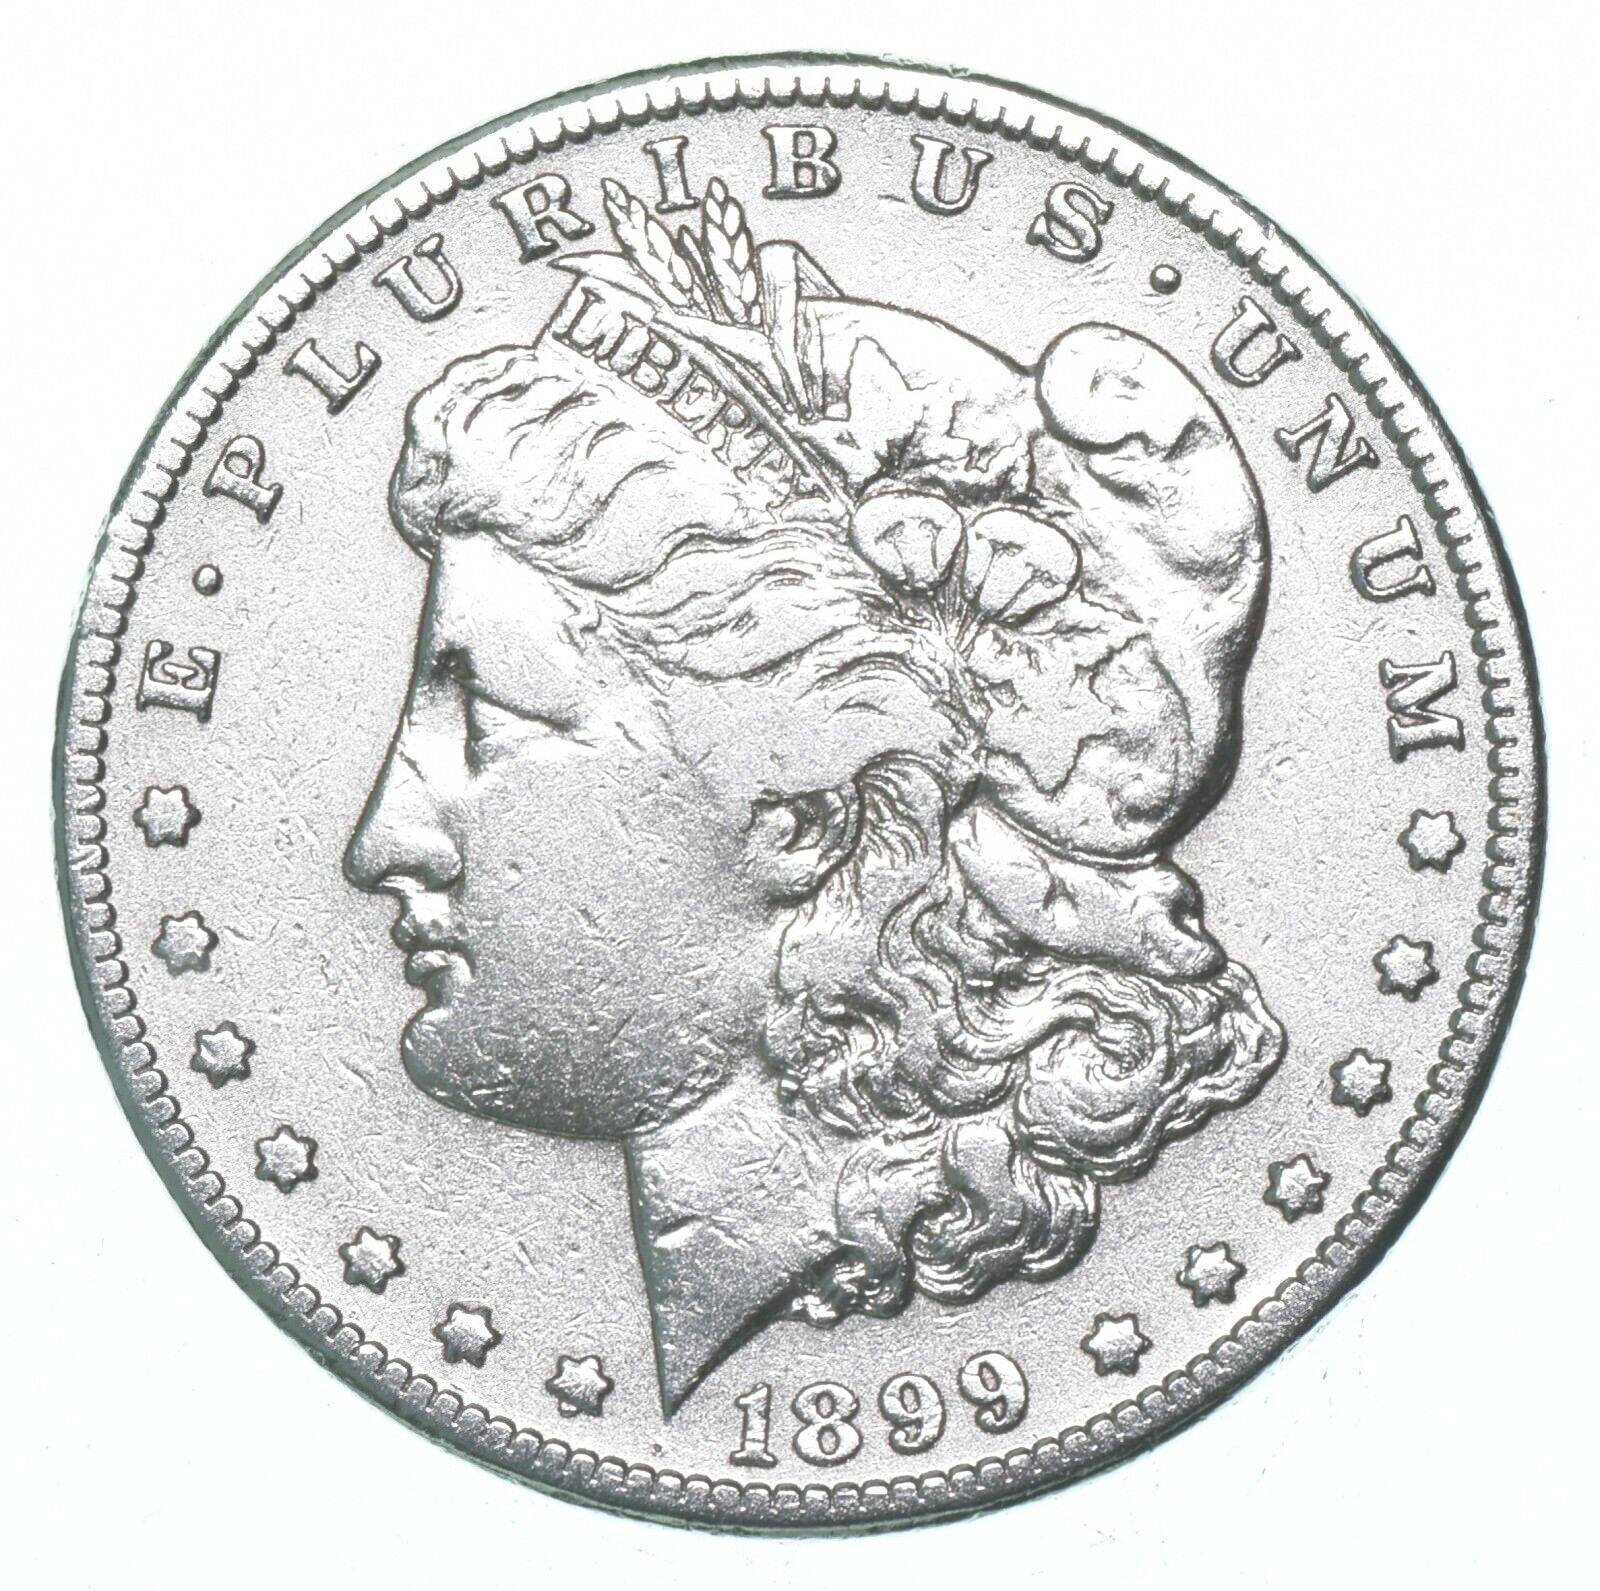 RARE - 1899-S Morgan Silver Dollar - Very TOUGH - High Redbook *